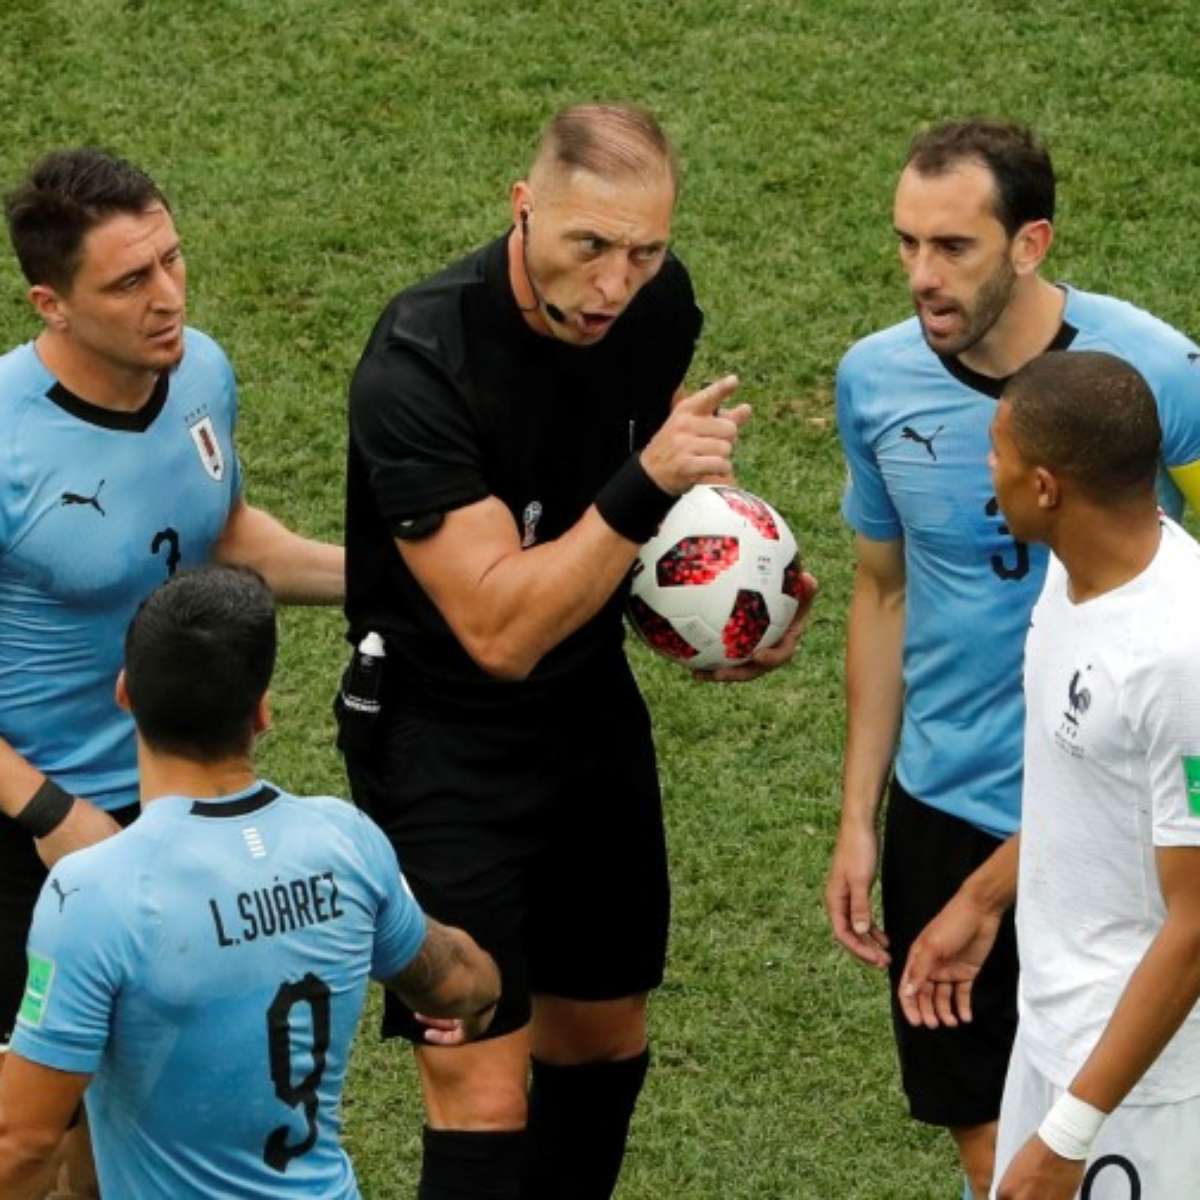 Argentino apita final da Copa; veja lista de árbitros das outras decisões -  15/07/2018 - Esporte - Folha